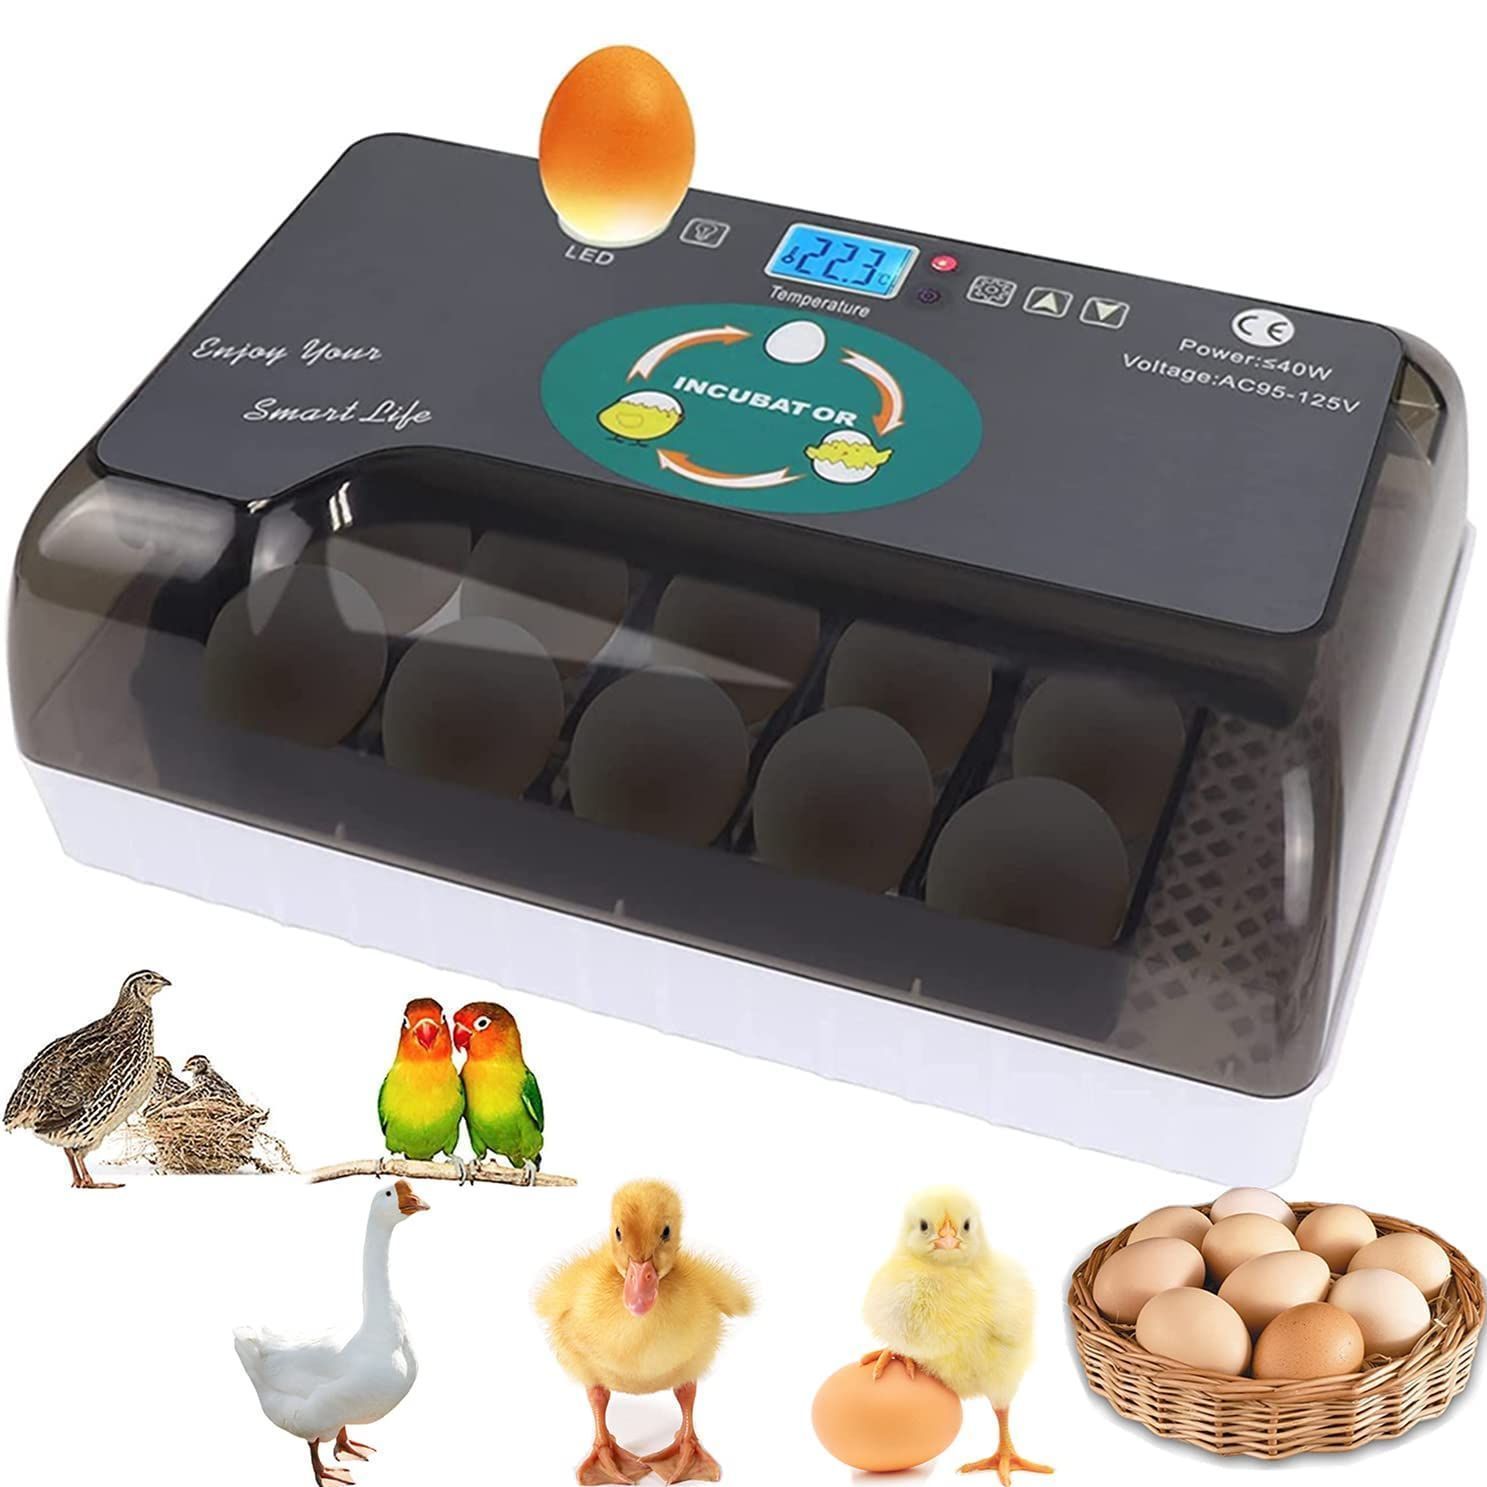 孵卵器 自動転卵 LifeBasis インキュベーター 孵化装置 - 鳥用品